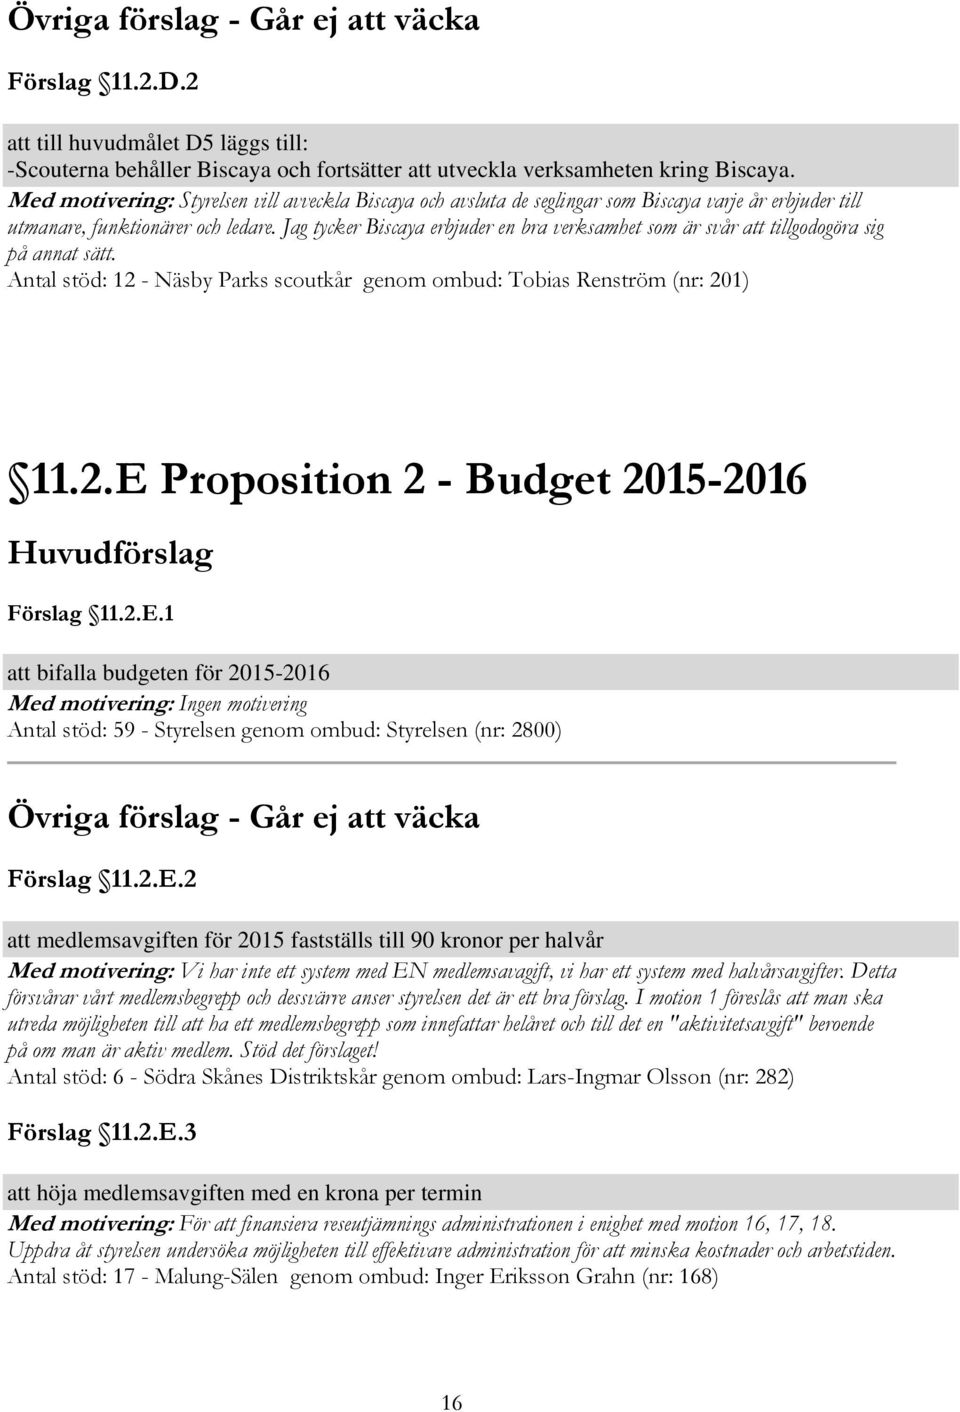 Jag tycker Biscaya erbjuder en bra verksamhet som är svår att tillgodogöra sig på annat sätt. Antal stöd: 12 - Näsby Parks scoutkår genom ombud: Tobias Renström (nr: 201) 11.2.E Proposition 2 - Budget 2015-2016 Förslag 11.